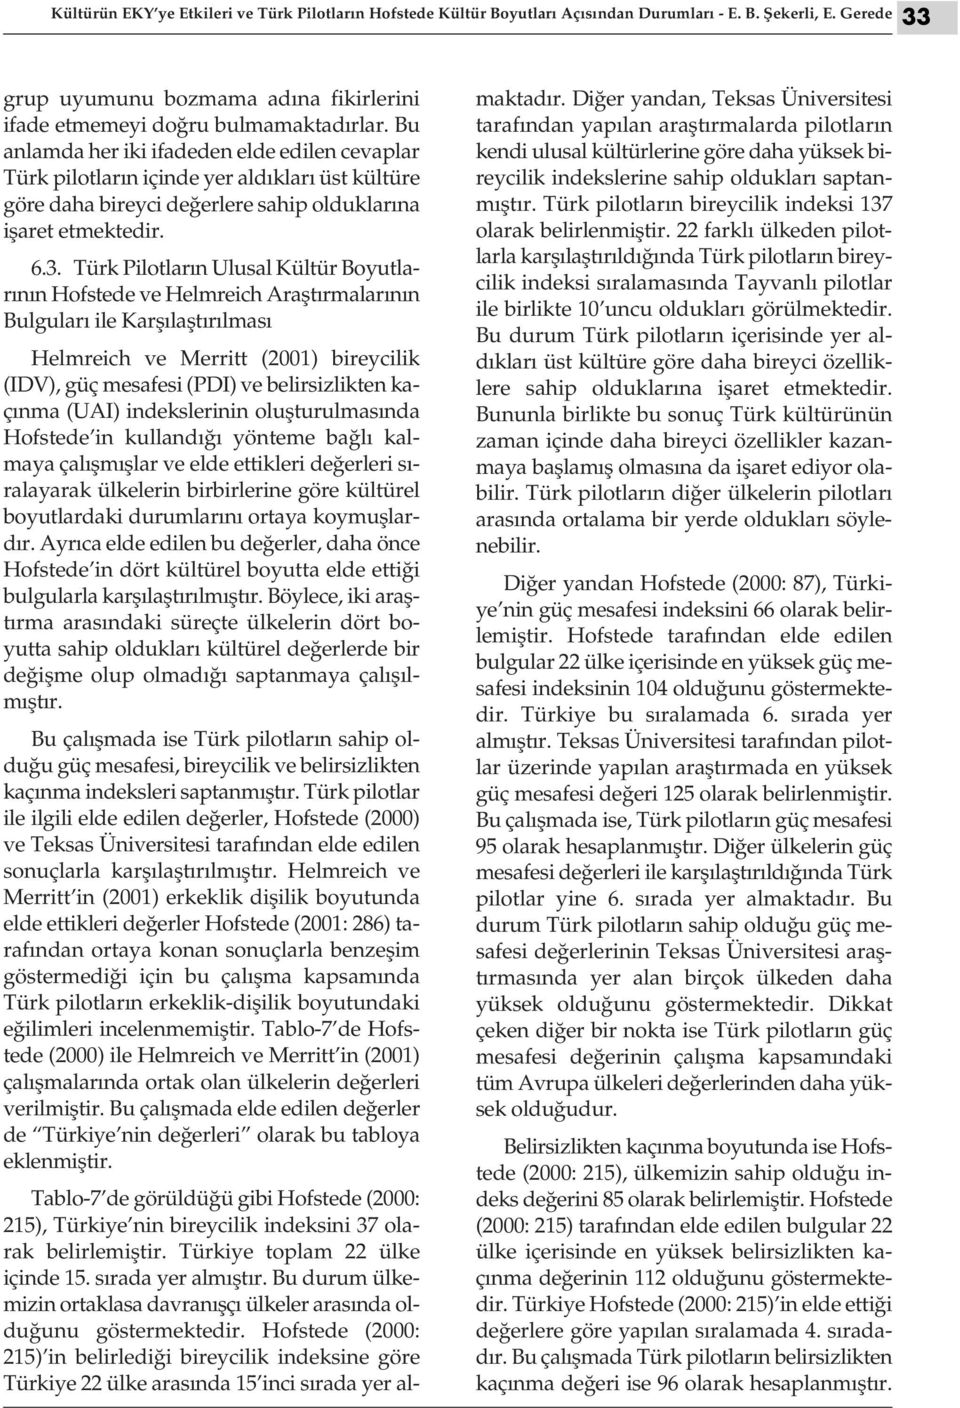 Türk Pilotların Ulusal Kültür Boyutlarının Hofstede ve Helmreich Araştırmalarının Bulguları ile Karşılaştırılması Helmreich ve Merritt (2001) bireycilik (IDV), güç mesafesi (PDI) ve belirsizlikten